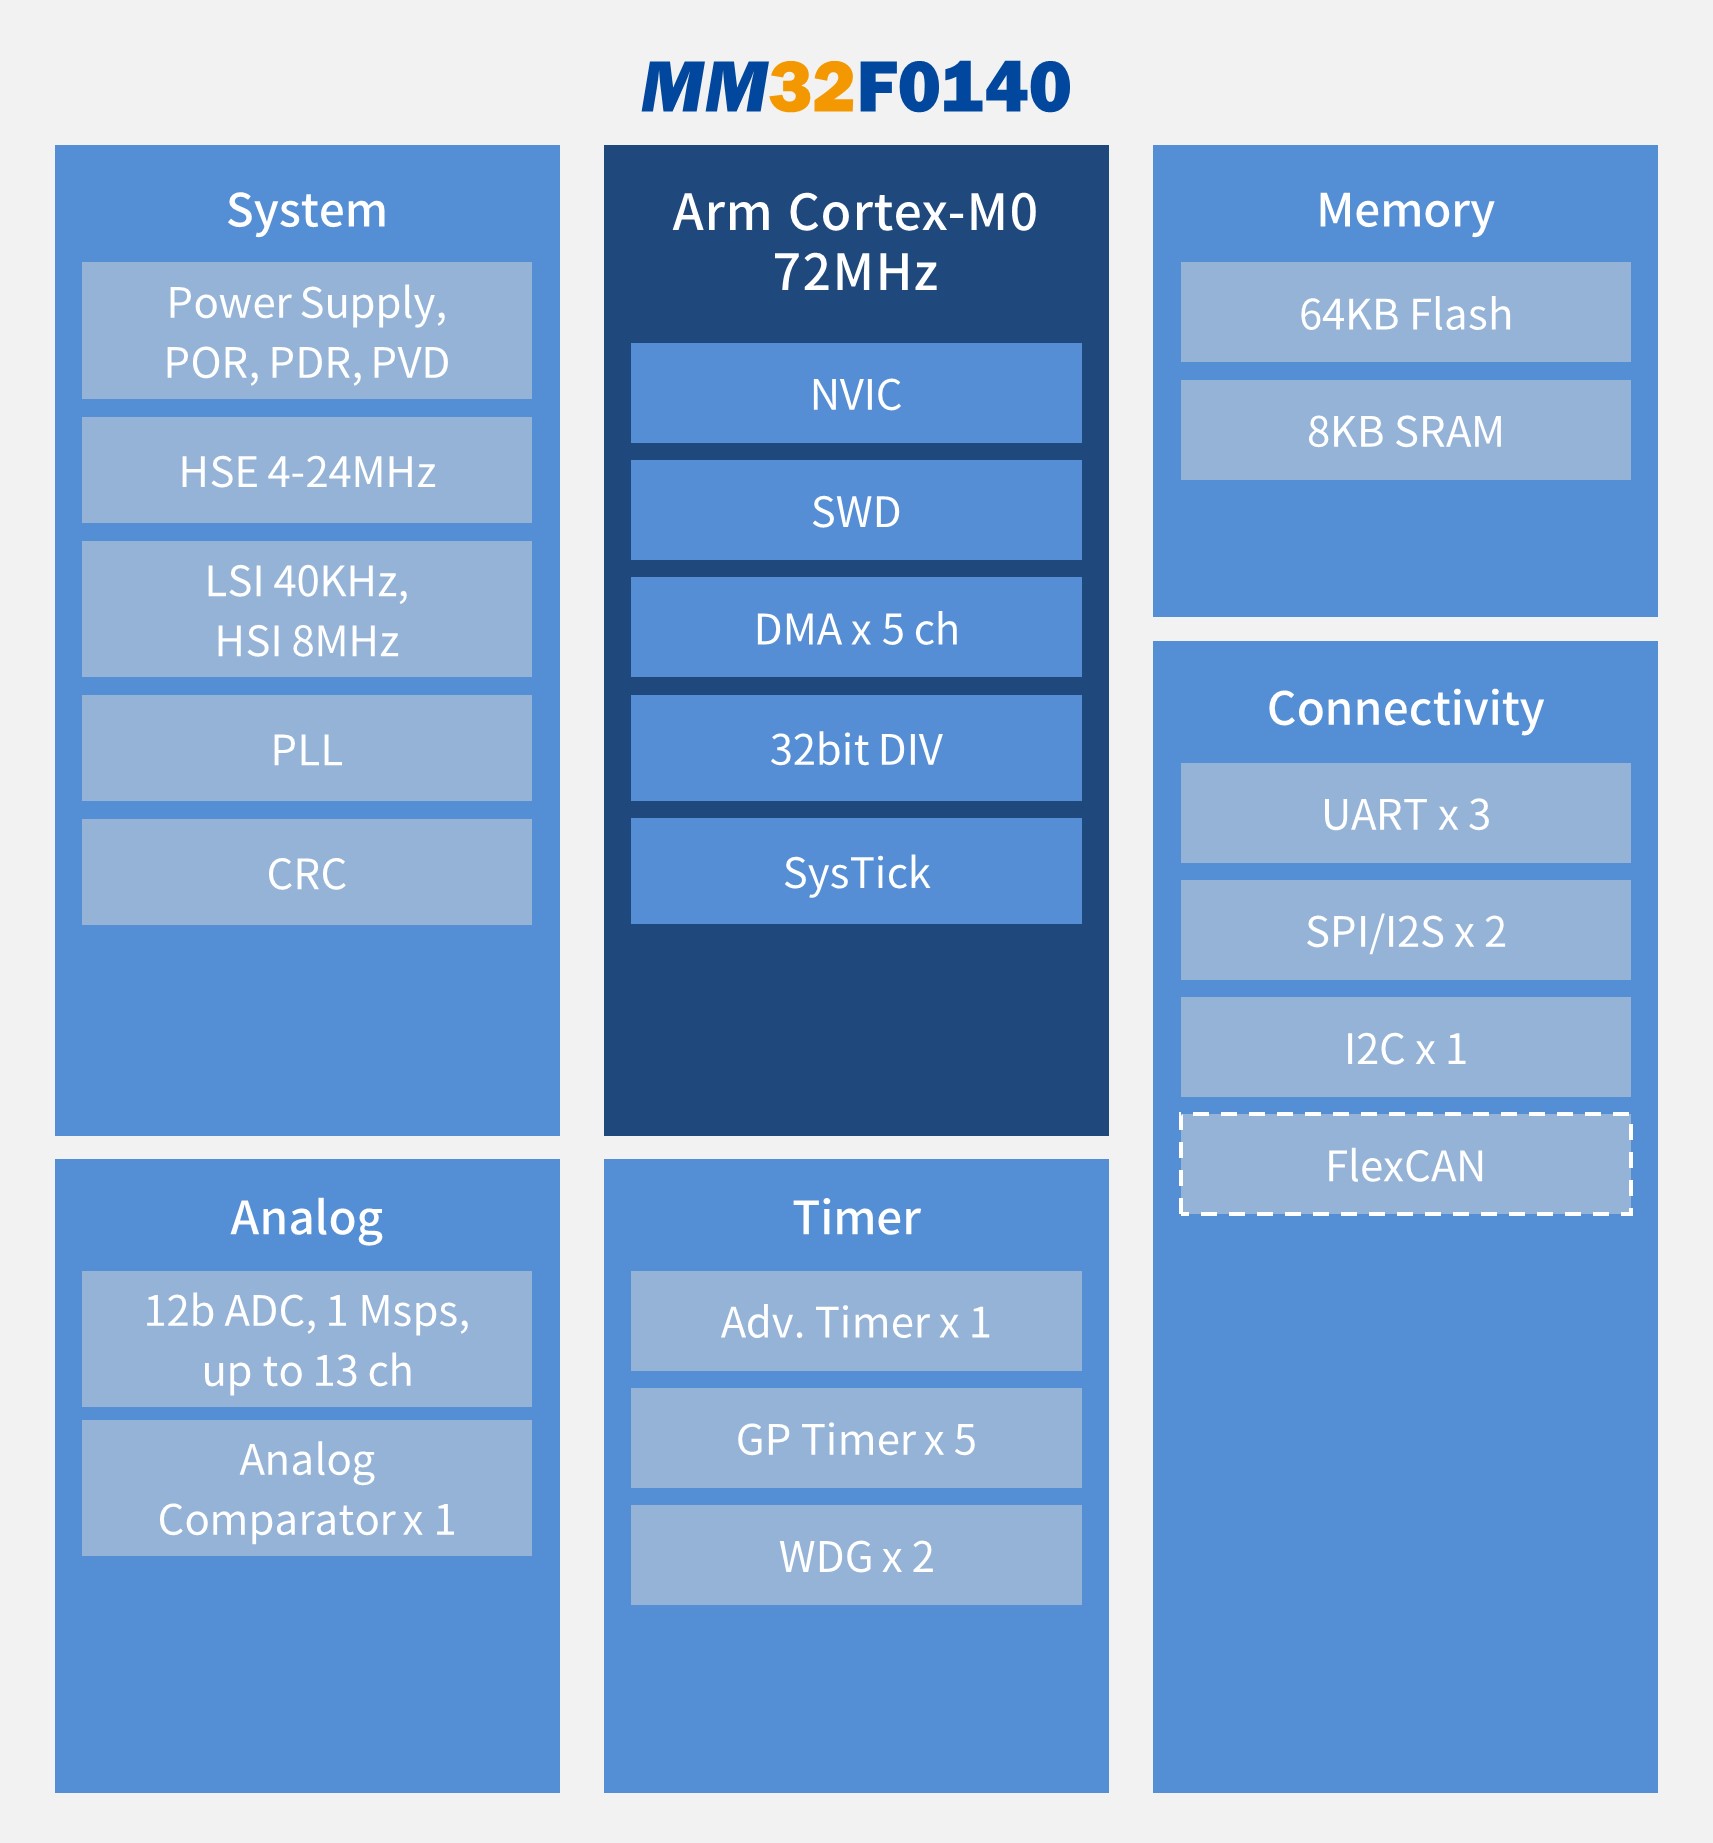 “灵动微电子发布全新超值型MM32F0140系列MCU"